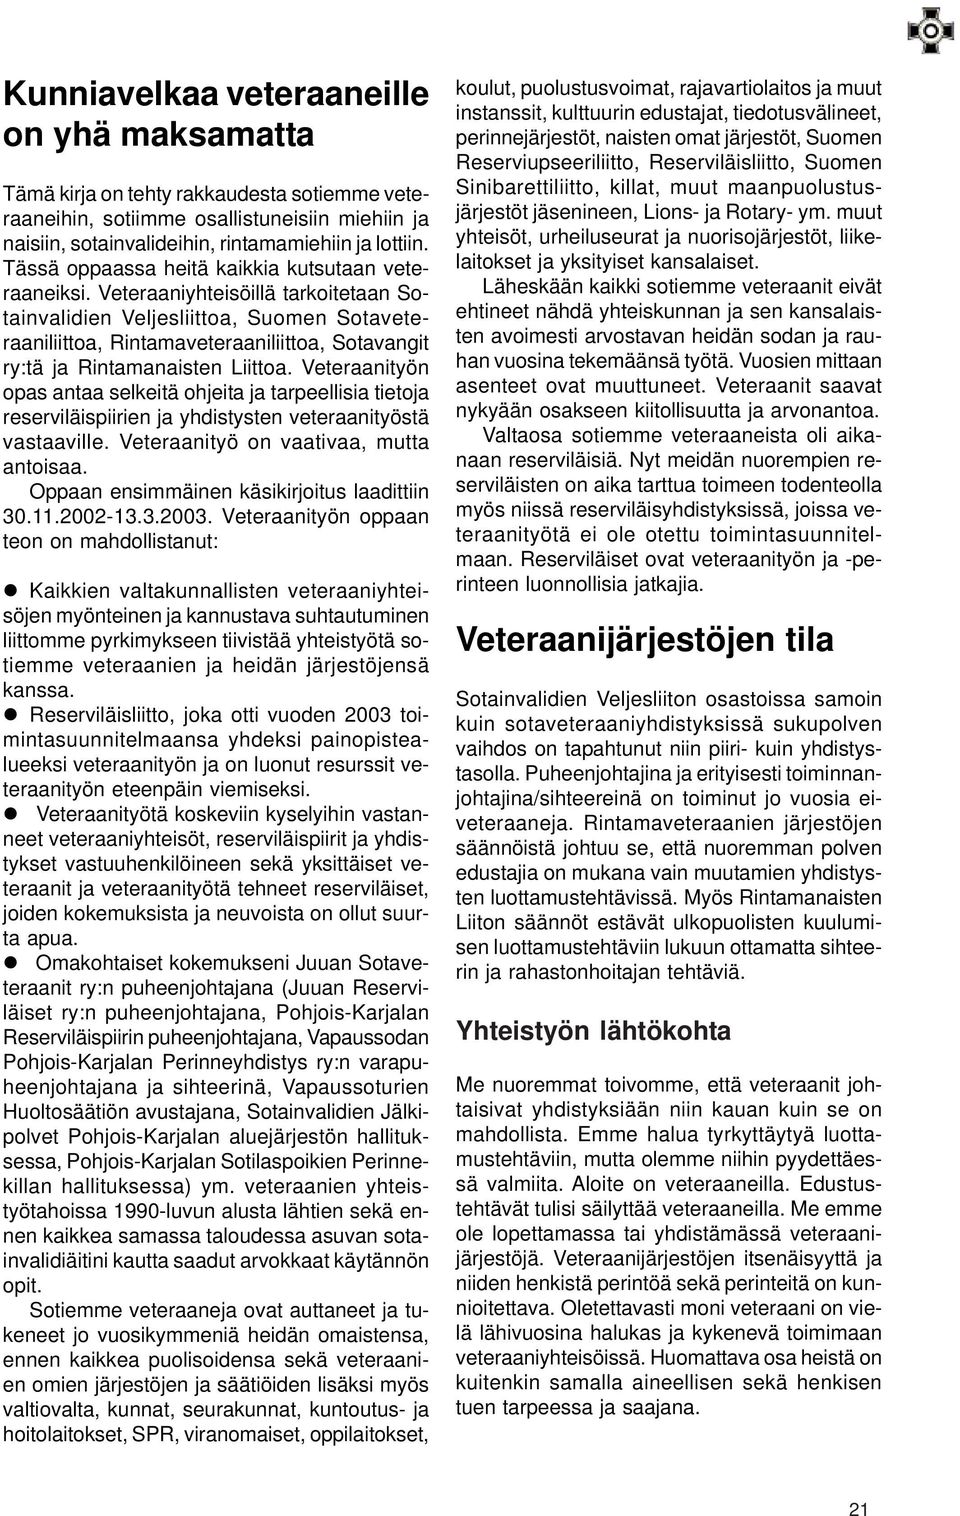 Veteraaniyhteisöillä tarkoitetaan Sotainvalidien Veljesliittoa, Suomen Sotaveteraaniliittoa, Rintamaveteraaniliittoa, Sotavangit ry:tä ja Rintamanaisten Liittoa.